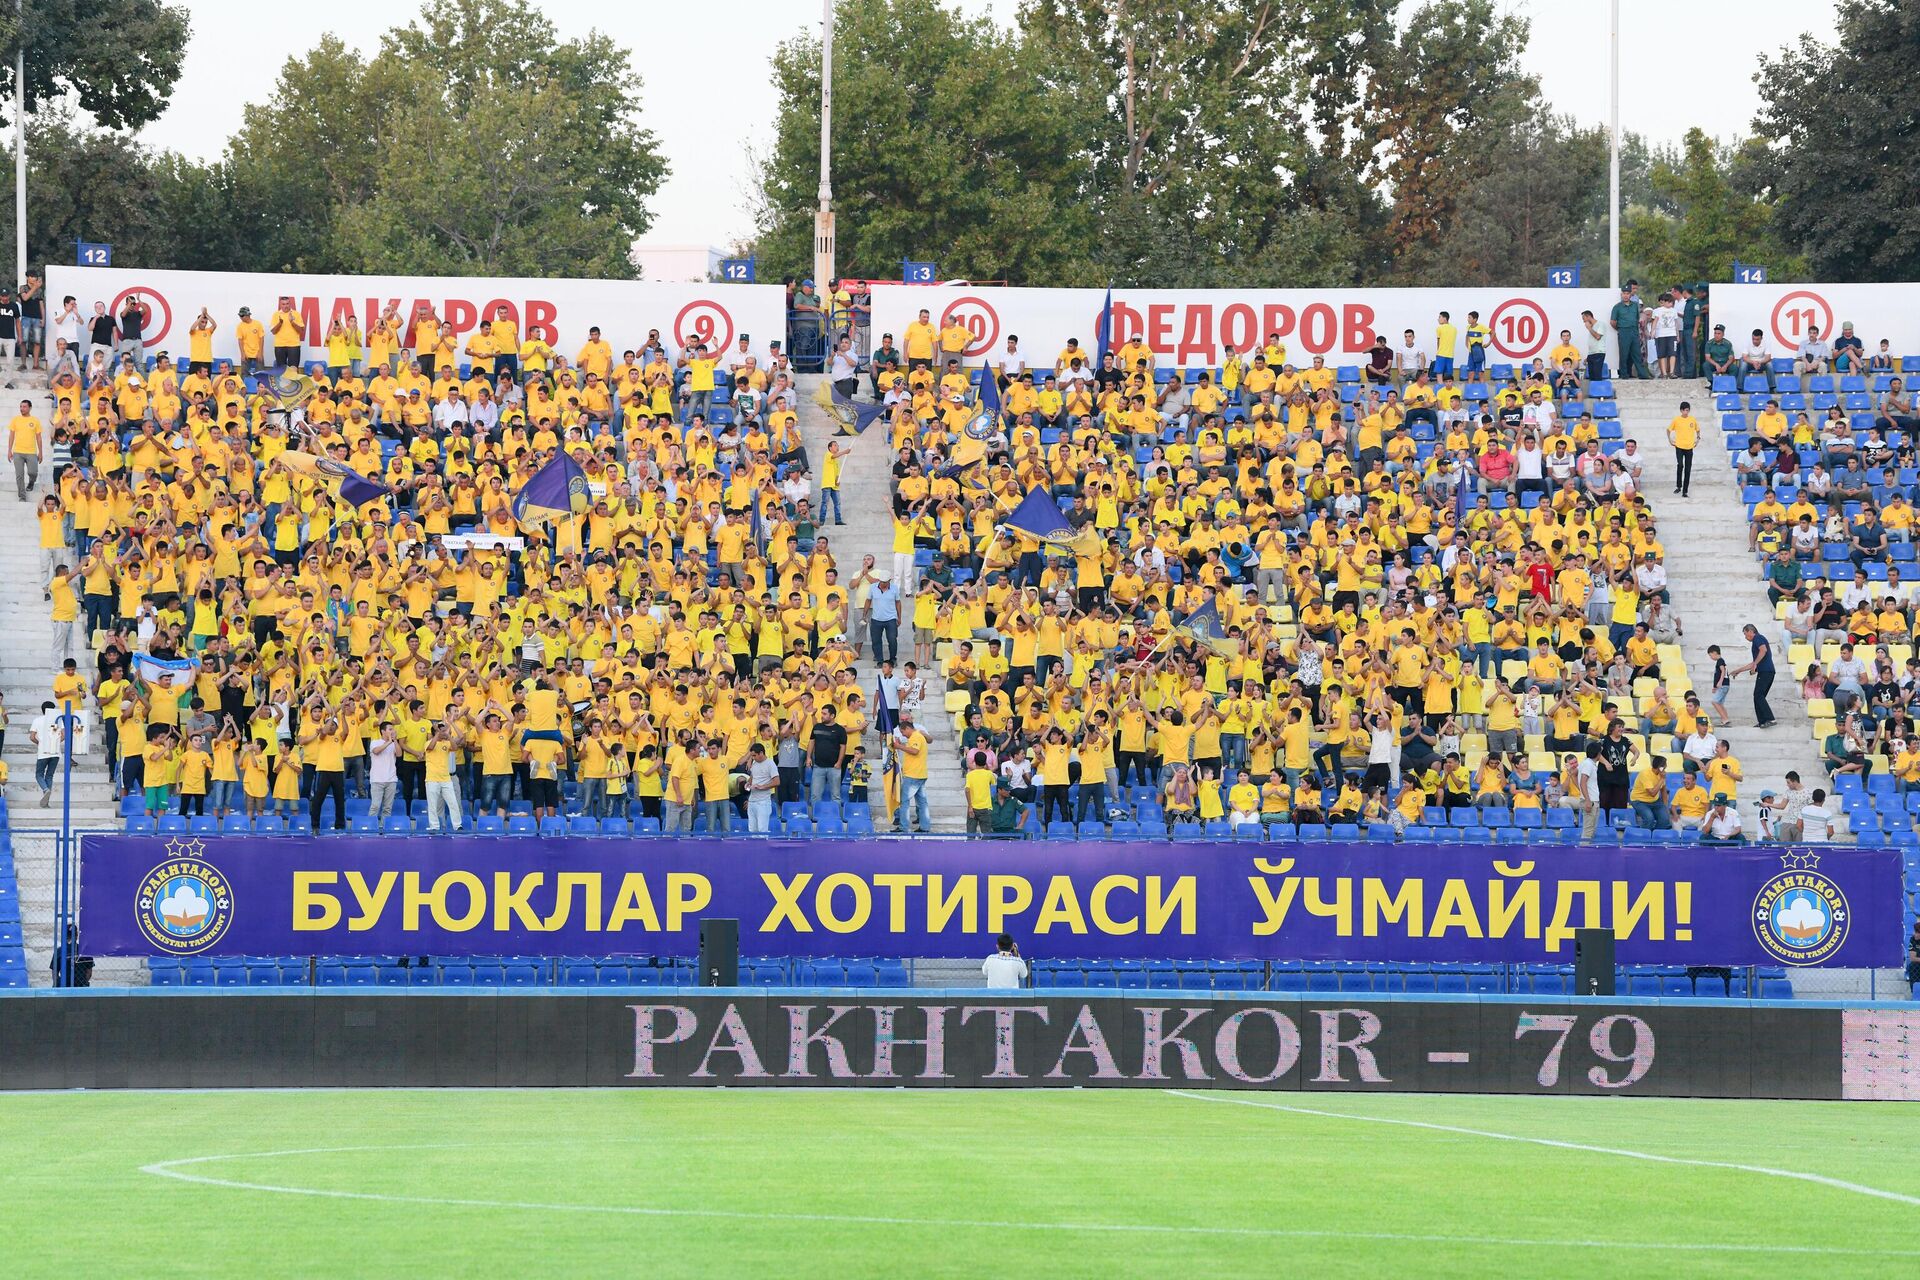 Bolelshiki na tribunax stadiona Paxtakor v Tashkente. - Sputnik O‘zbekiston, 1920, 15.11.2022